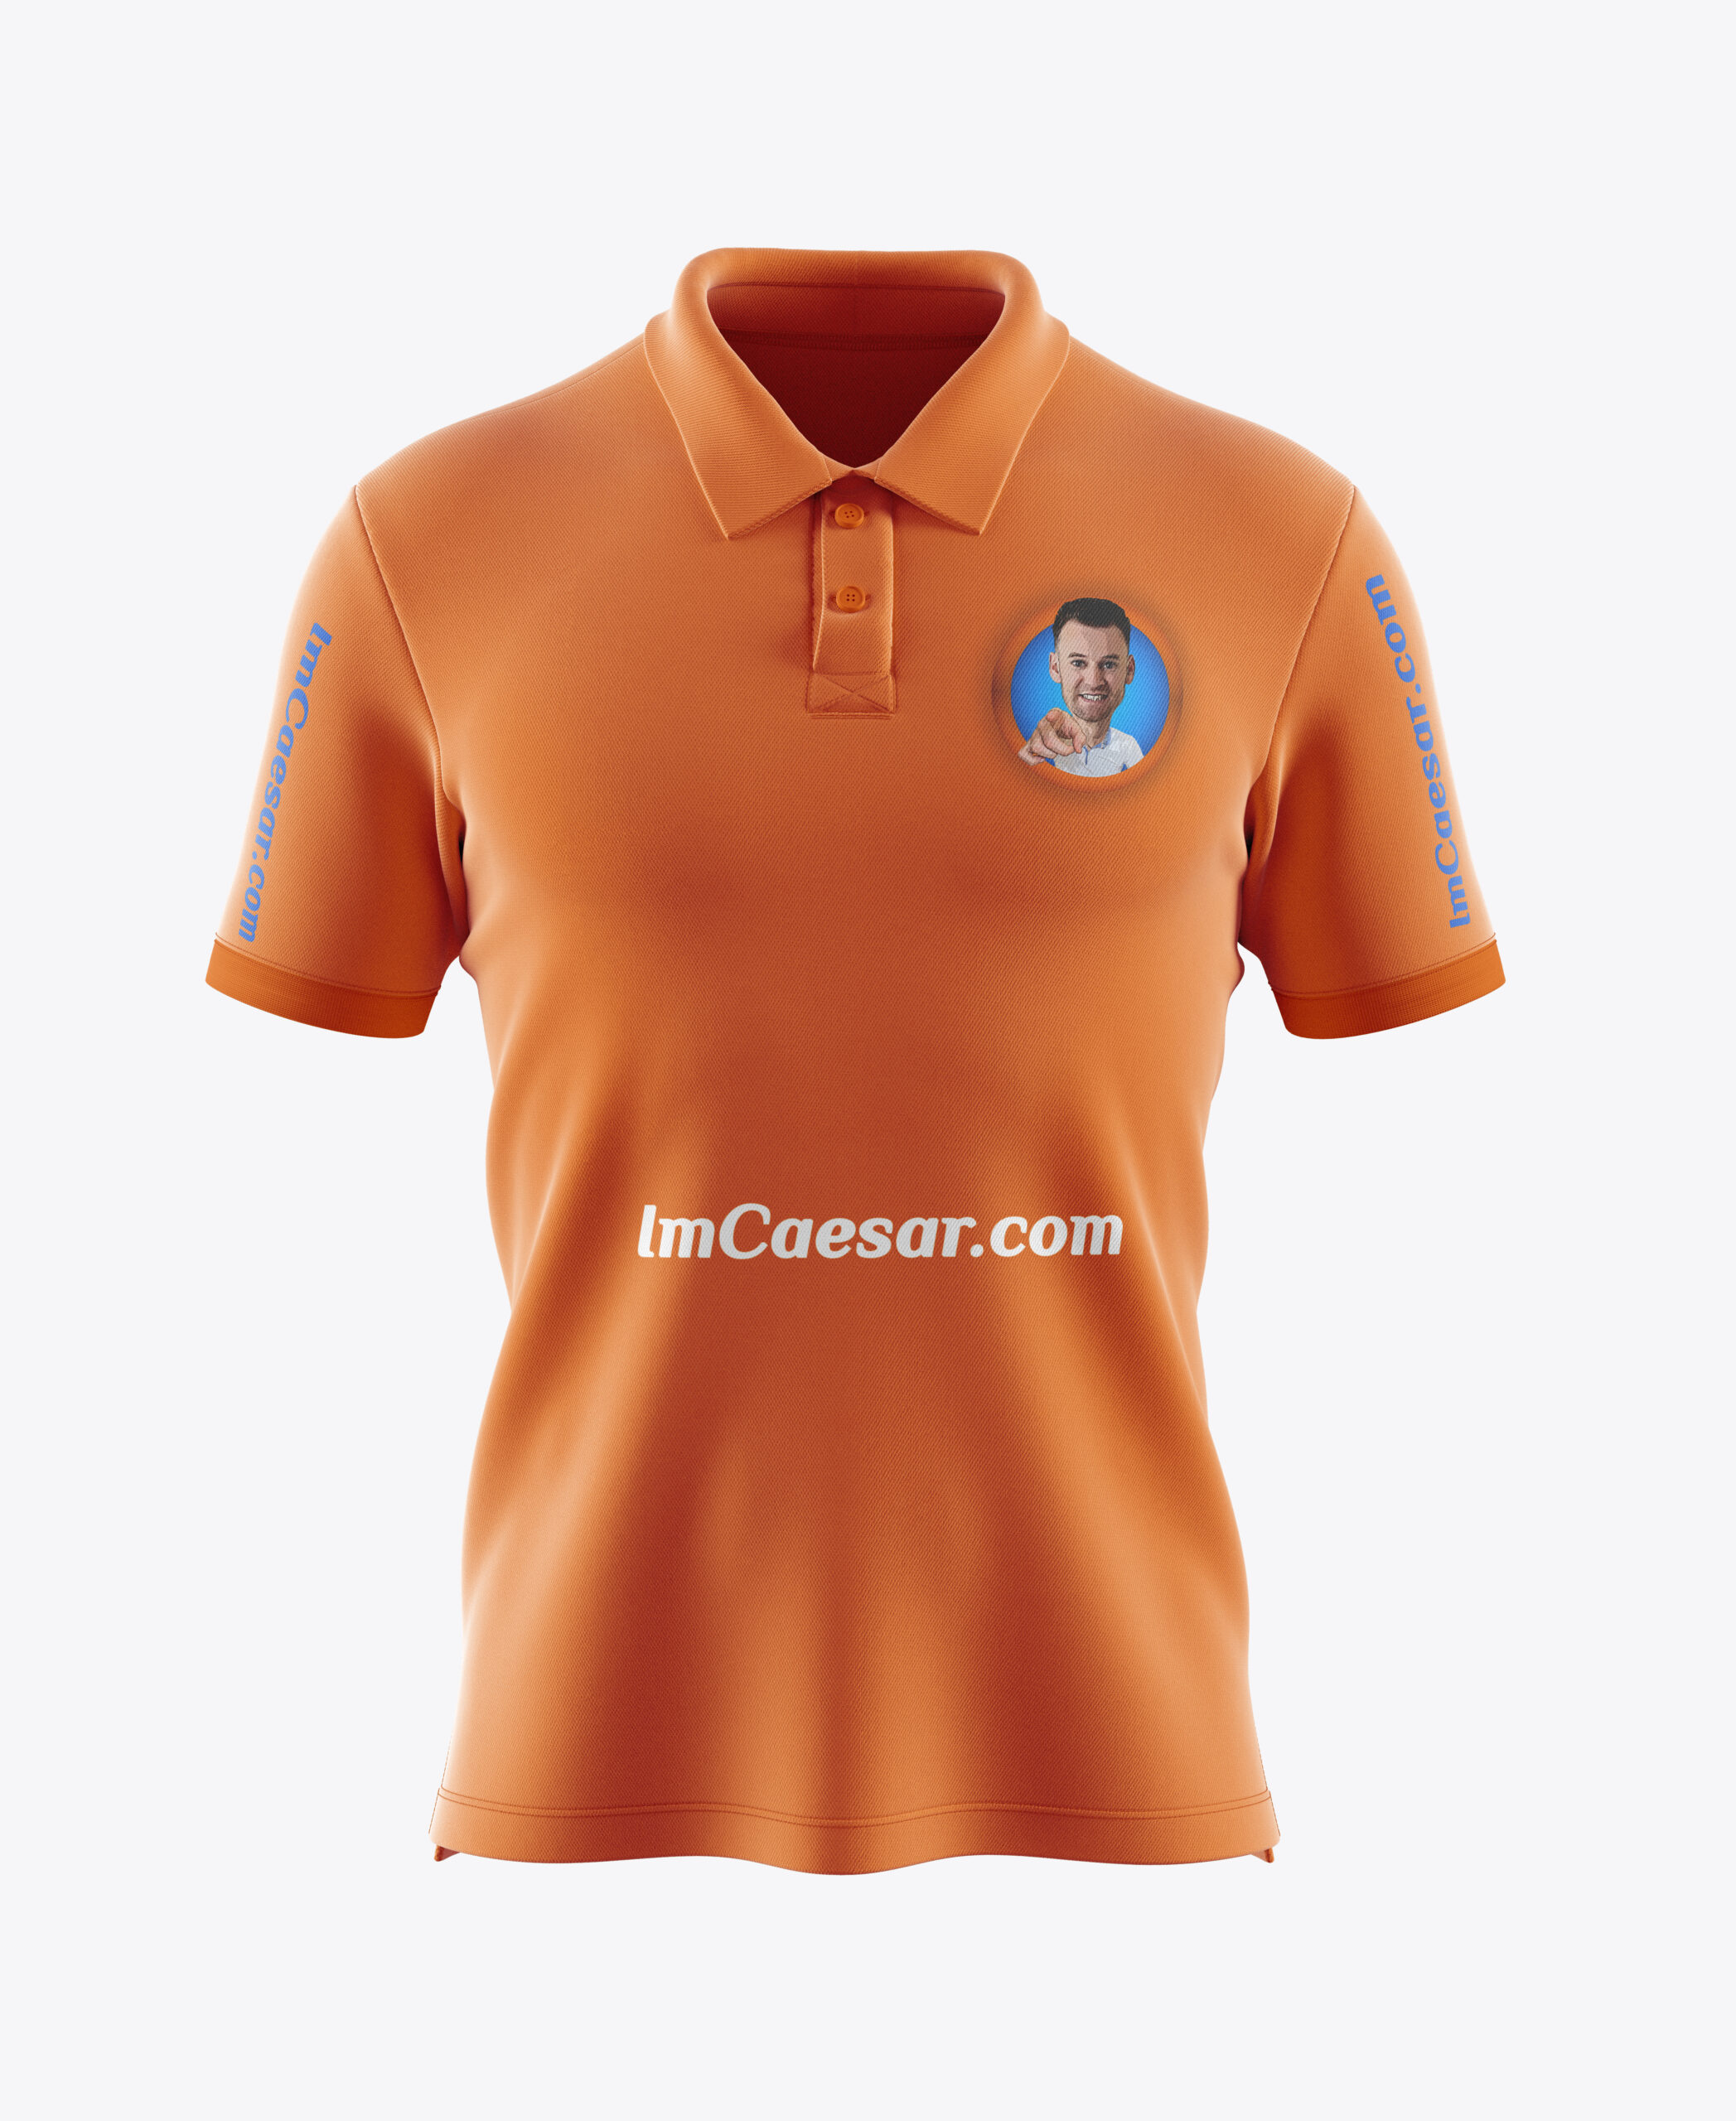 Caesar Giovanoni Polo Shirt Mockup